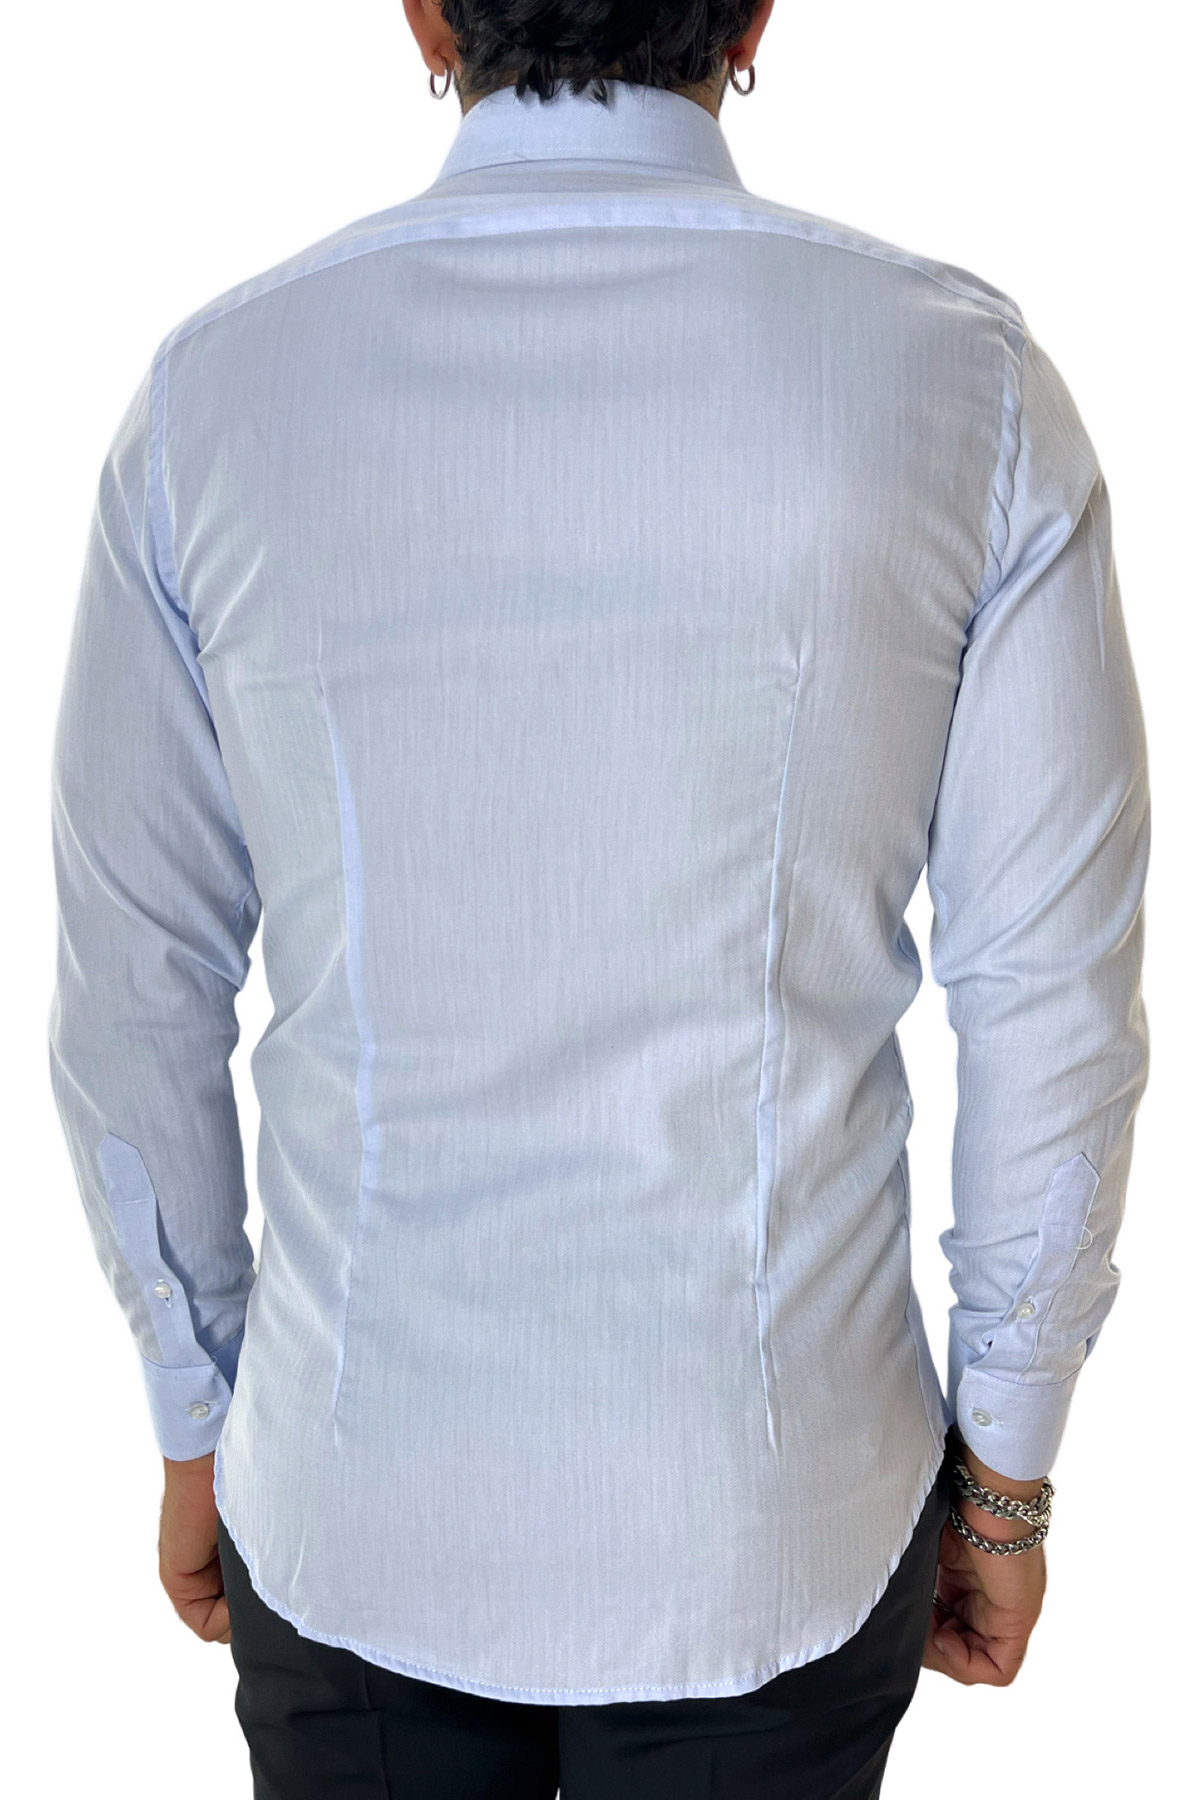 Camicia Uomo slim fit 100% cotone morbido effetto spigato tono su tono Collo semi francese tinta unita